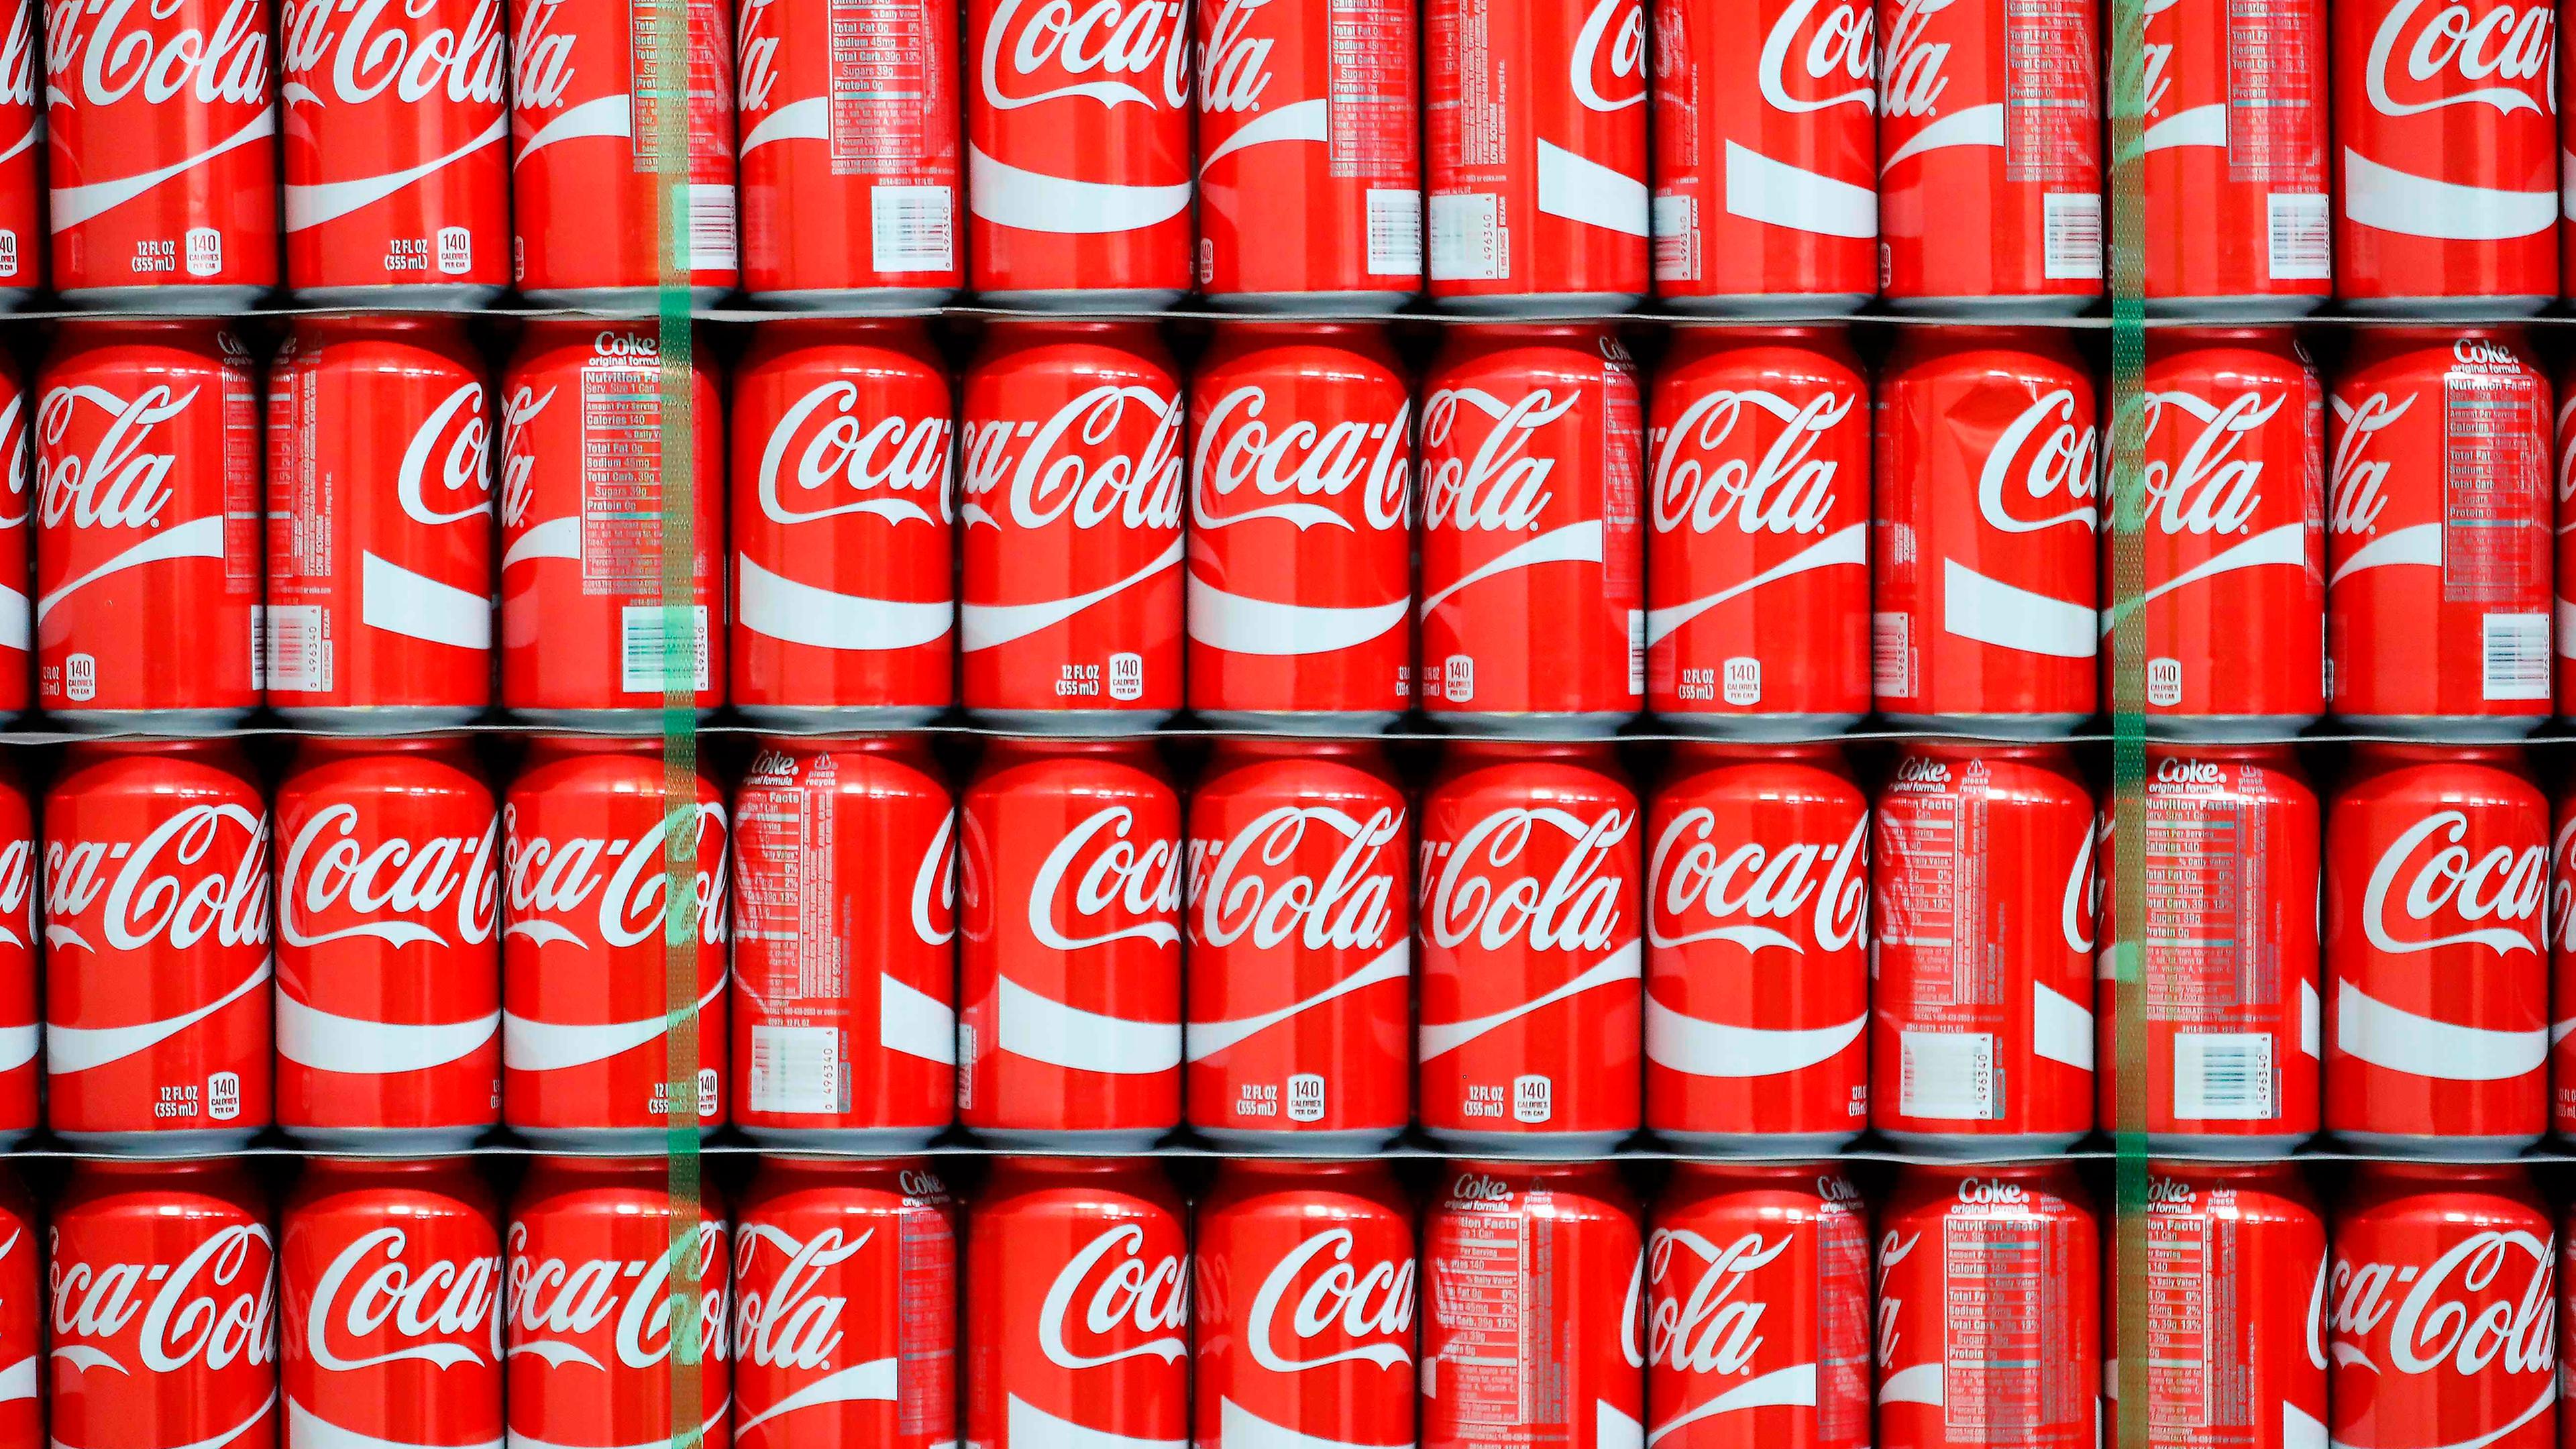 Comment Coca-Cola vous fait payer plus cher des bouteilles plus petites